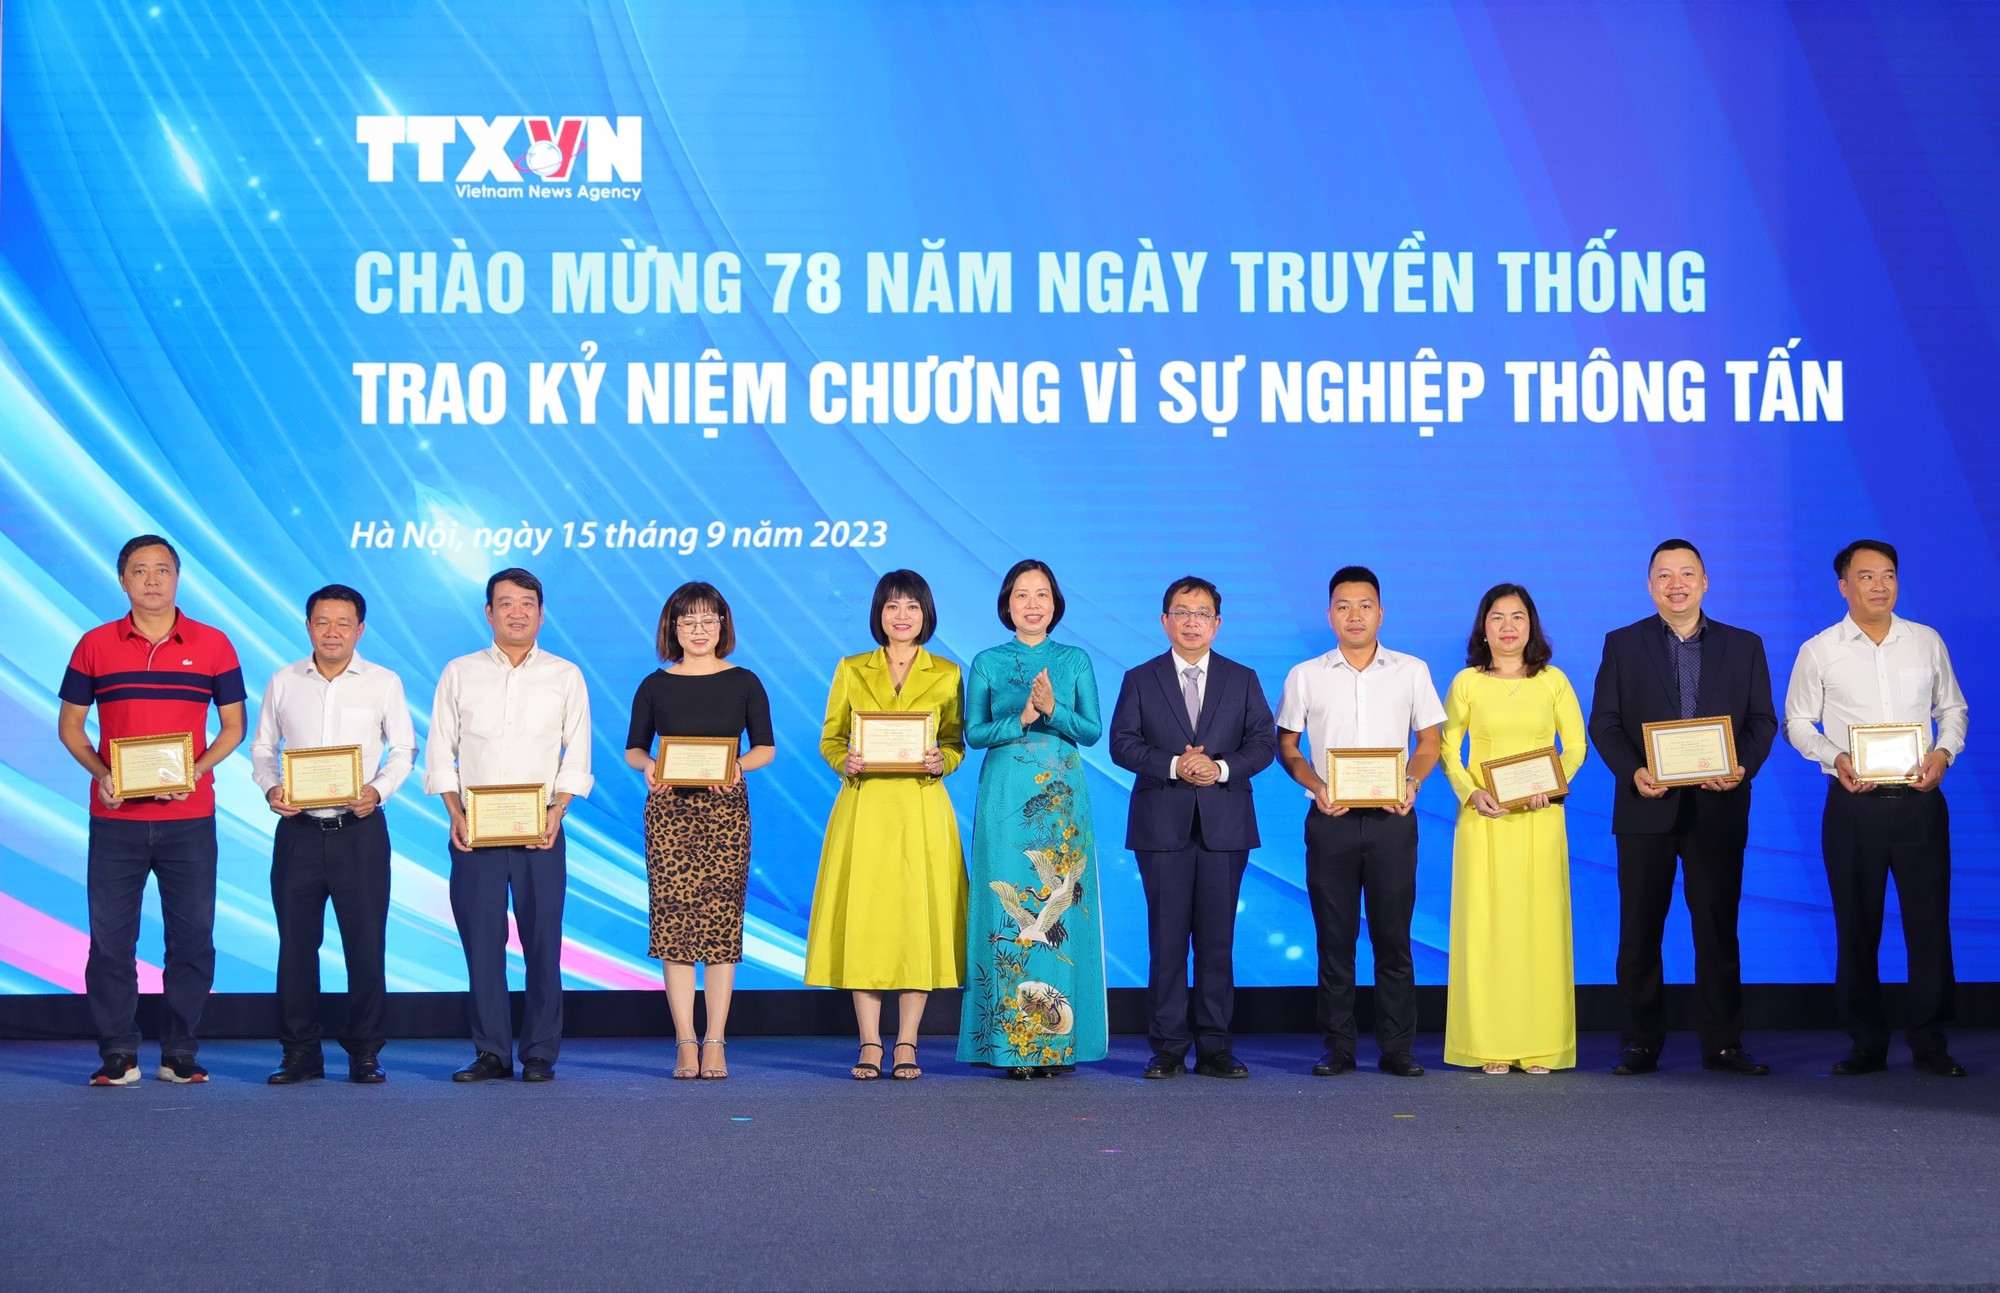 Kỷ niệm 78 năm TTXVN: Giữ vững những giá trị nền tảng của cơ quan Thông tấn quốc gia - Ảnh 5.